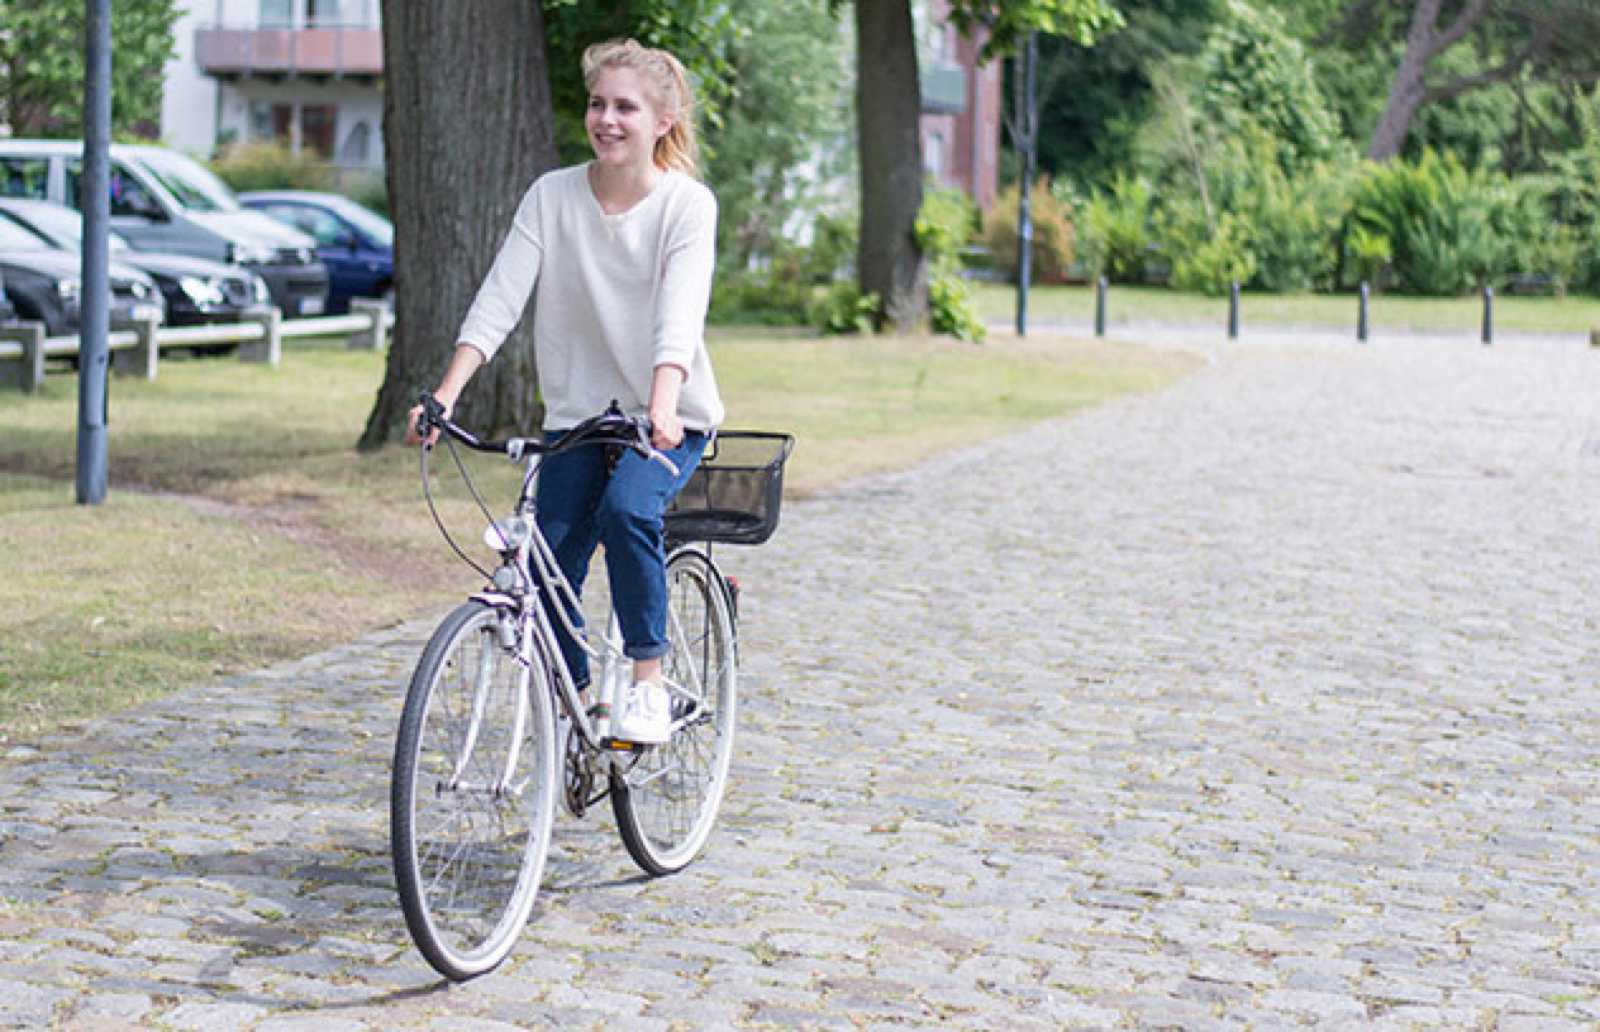  Vom 1. Juni bis zum 15. September zählte jeder auf dem Fahrrad zurückgelegte Kilometer für den Wettbewerb FHahr Rad! – egal ob dienstlich oder in der Freizeit. (Foto: FH Münster/Fabian Puller)